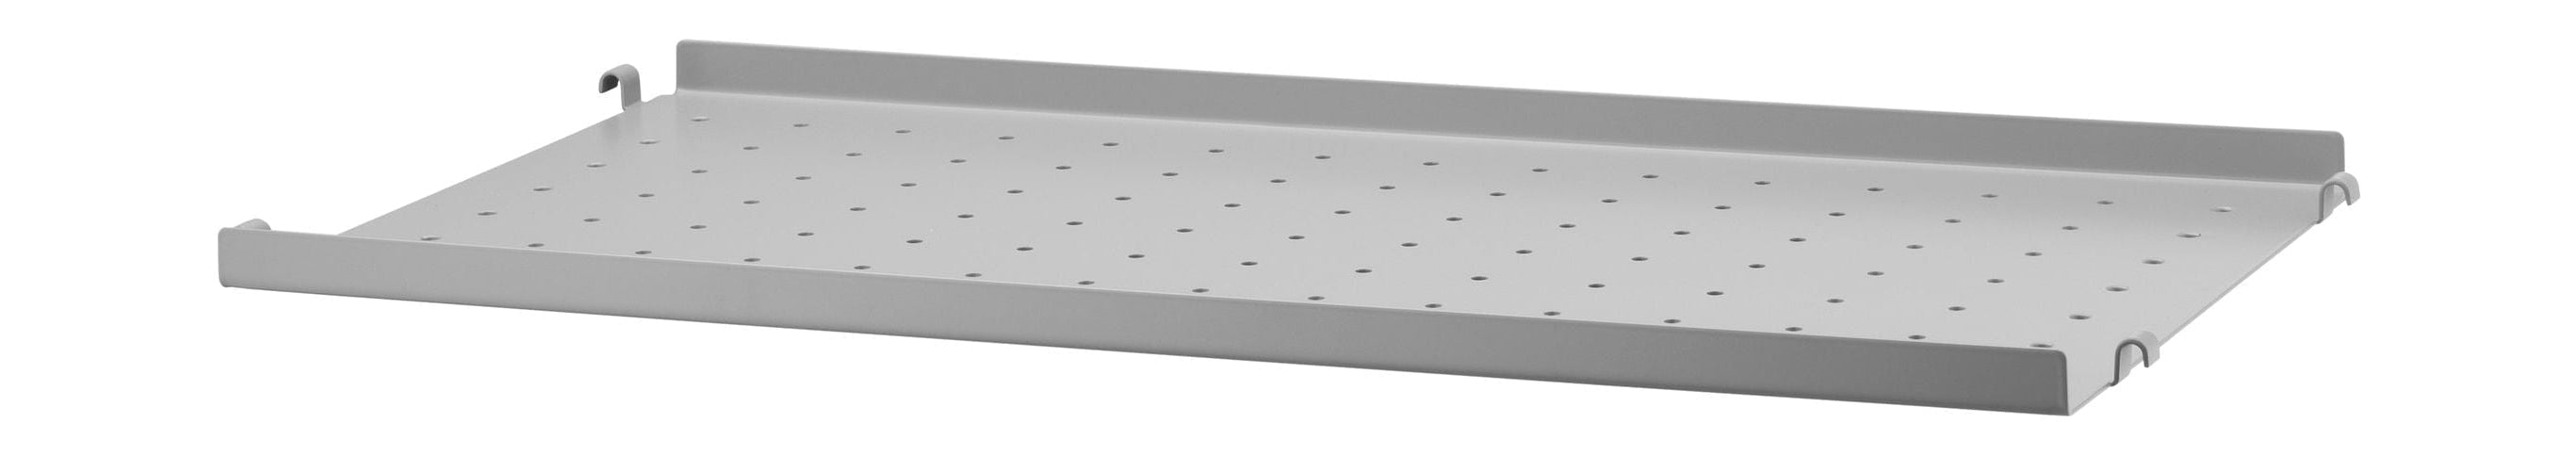 Strengmøbler Strengsystem Metalhylde med lav kant 30x58 cm, grå